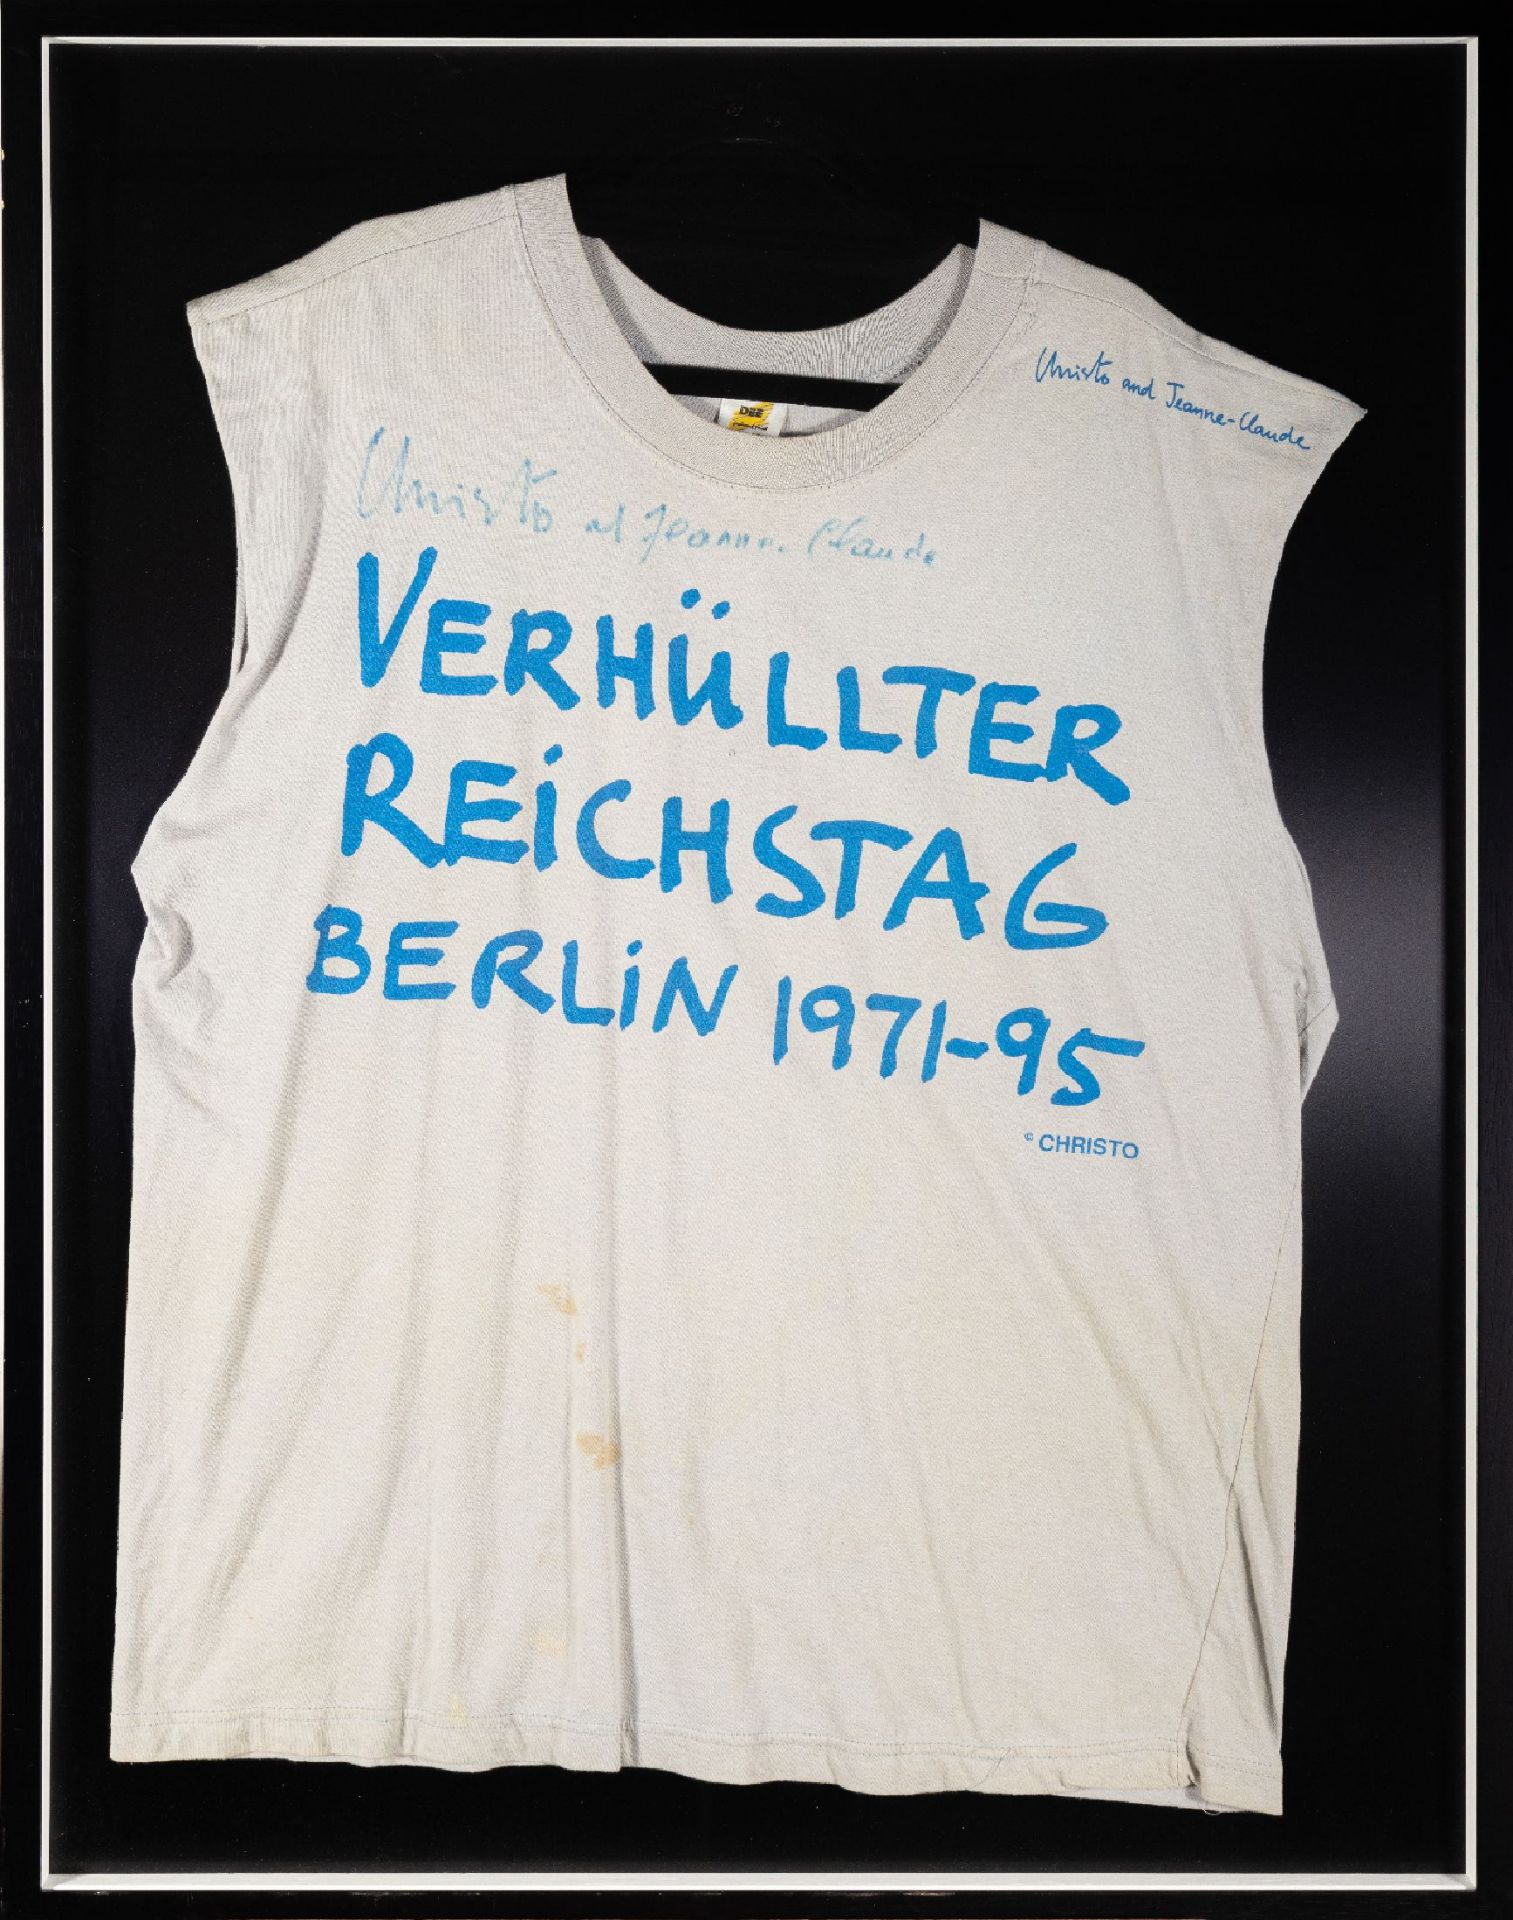 Christo und Jean-Claude,  T-Shirt zum Projekt Verhüllter